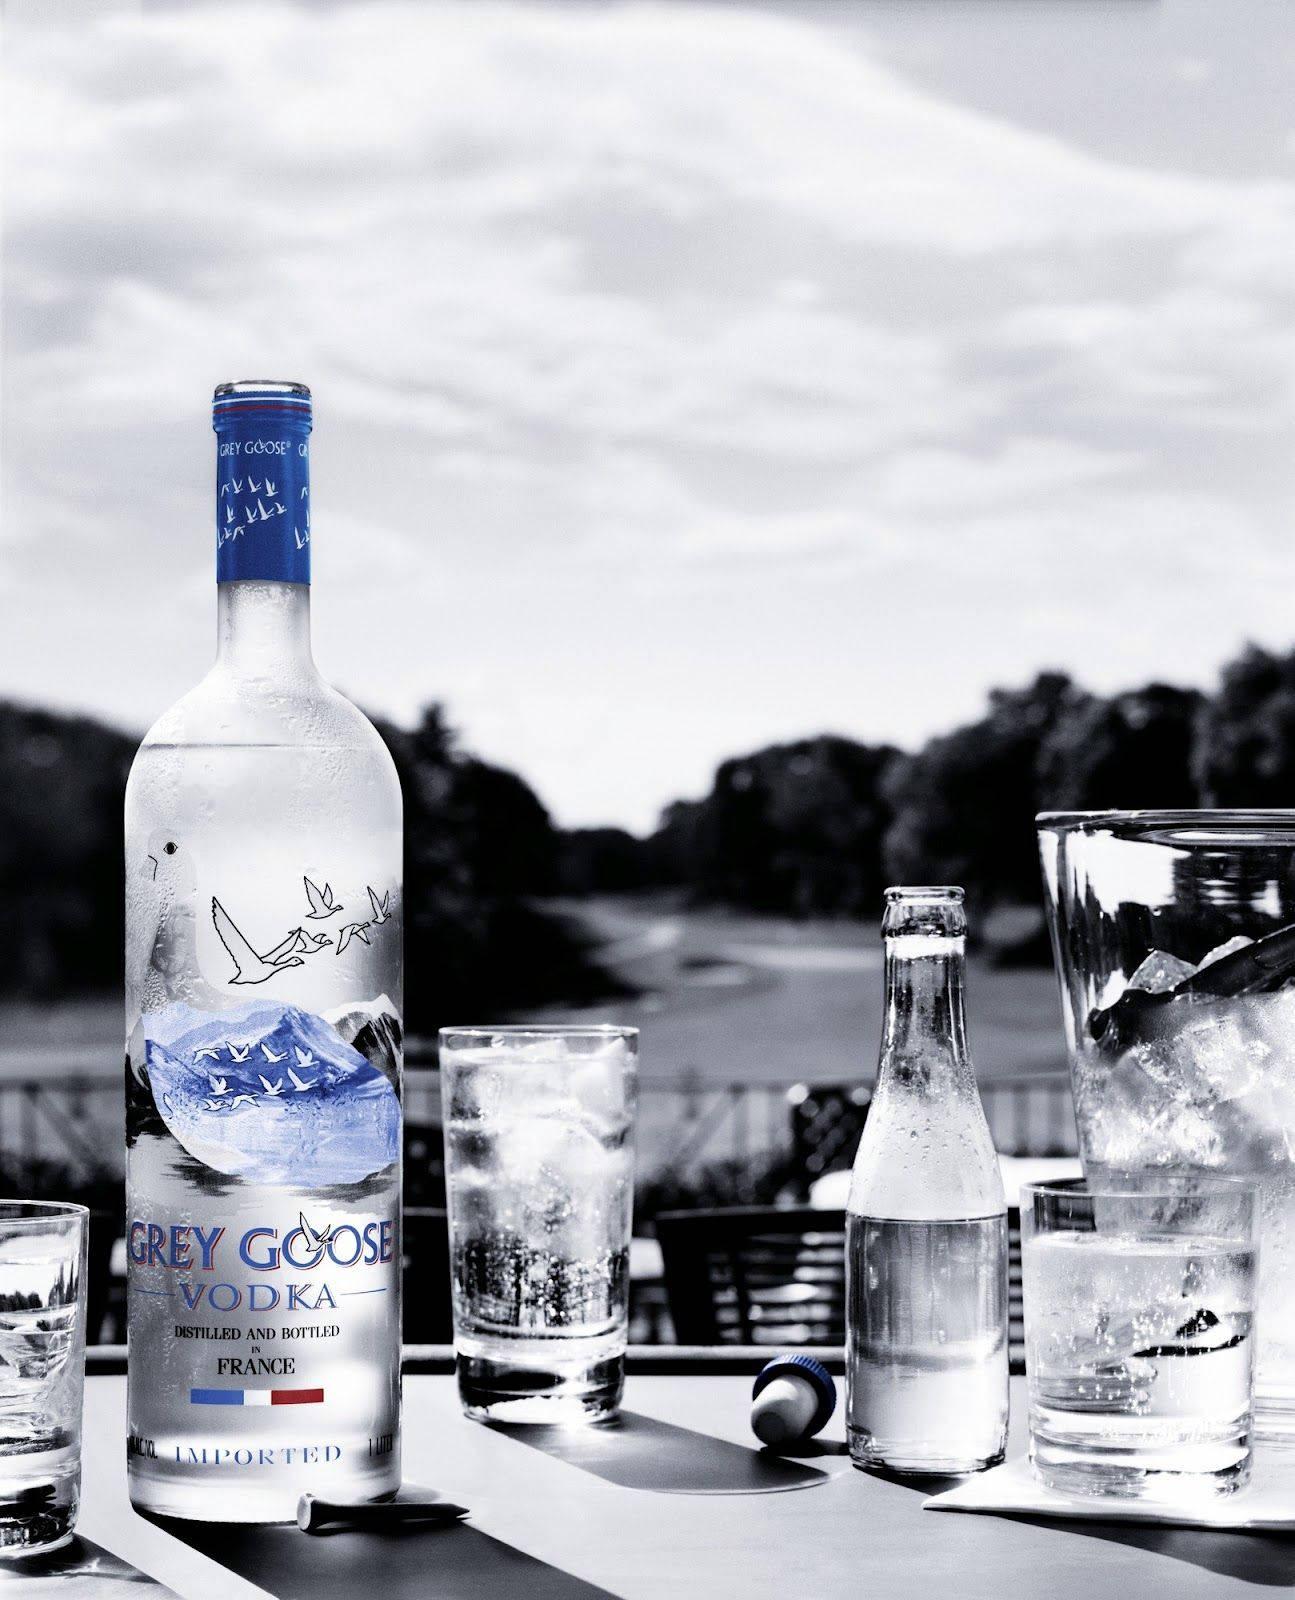 Premiumfranskt Alkoholmärke Grey Goose Vodka. Wallpaper